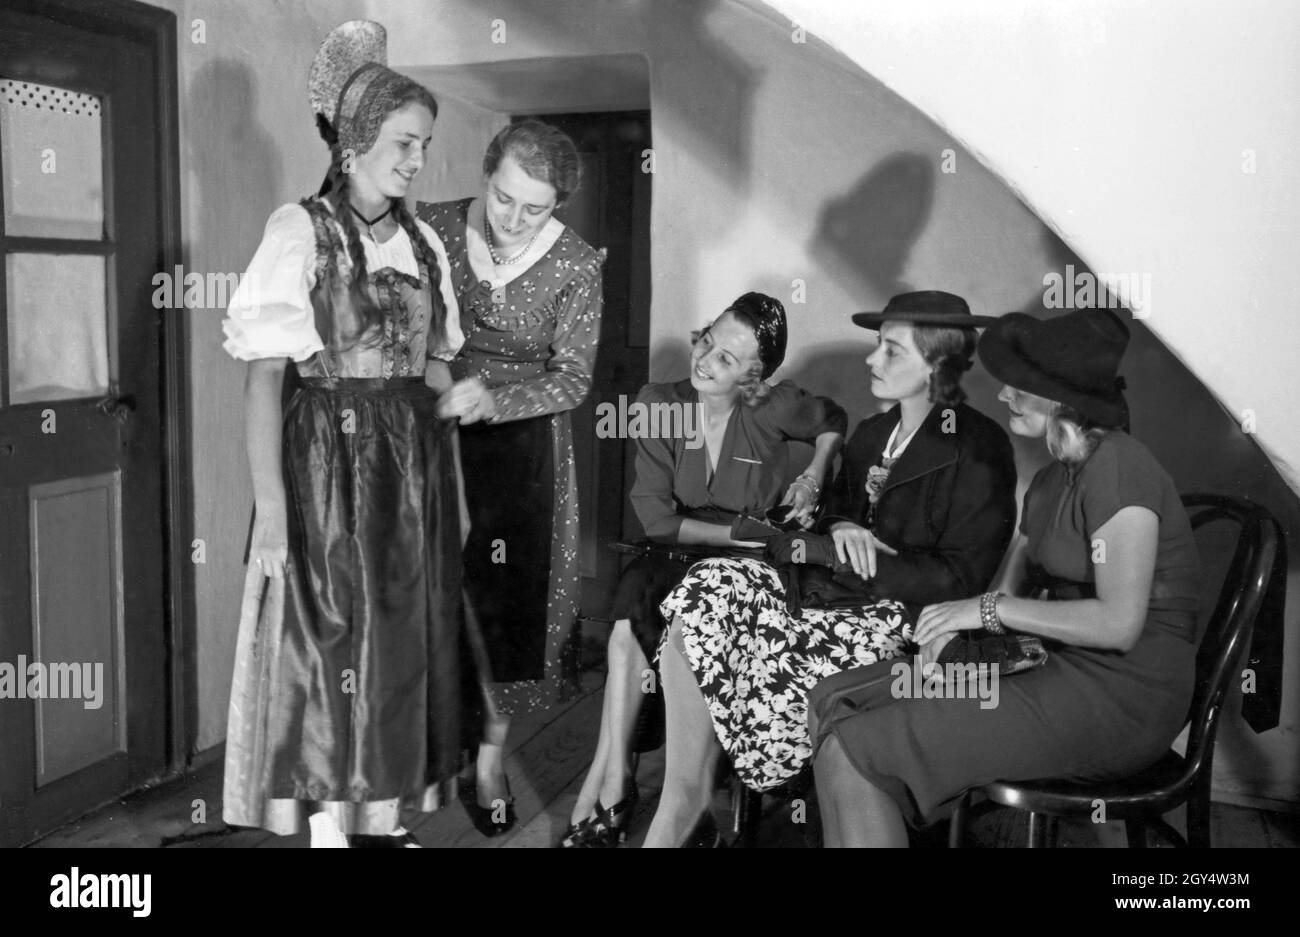 Modenschau für Trachtenmode in der Wachau,Österreich 1930 Jahre. Sfilata di moda tradizionale nella zona di Wachau, Austria anni trenta. Foto Stock